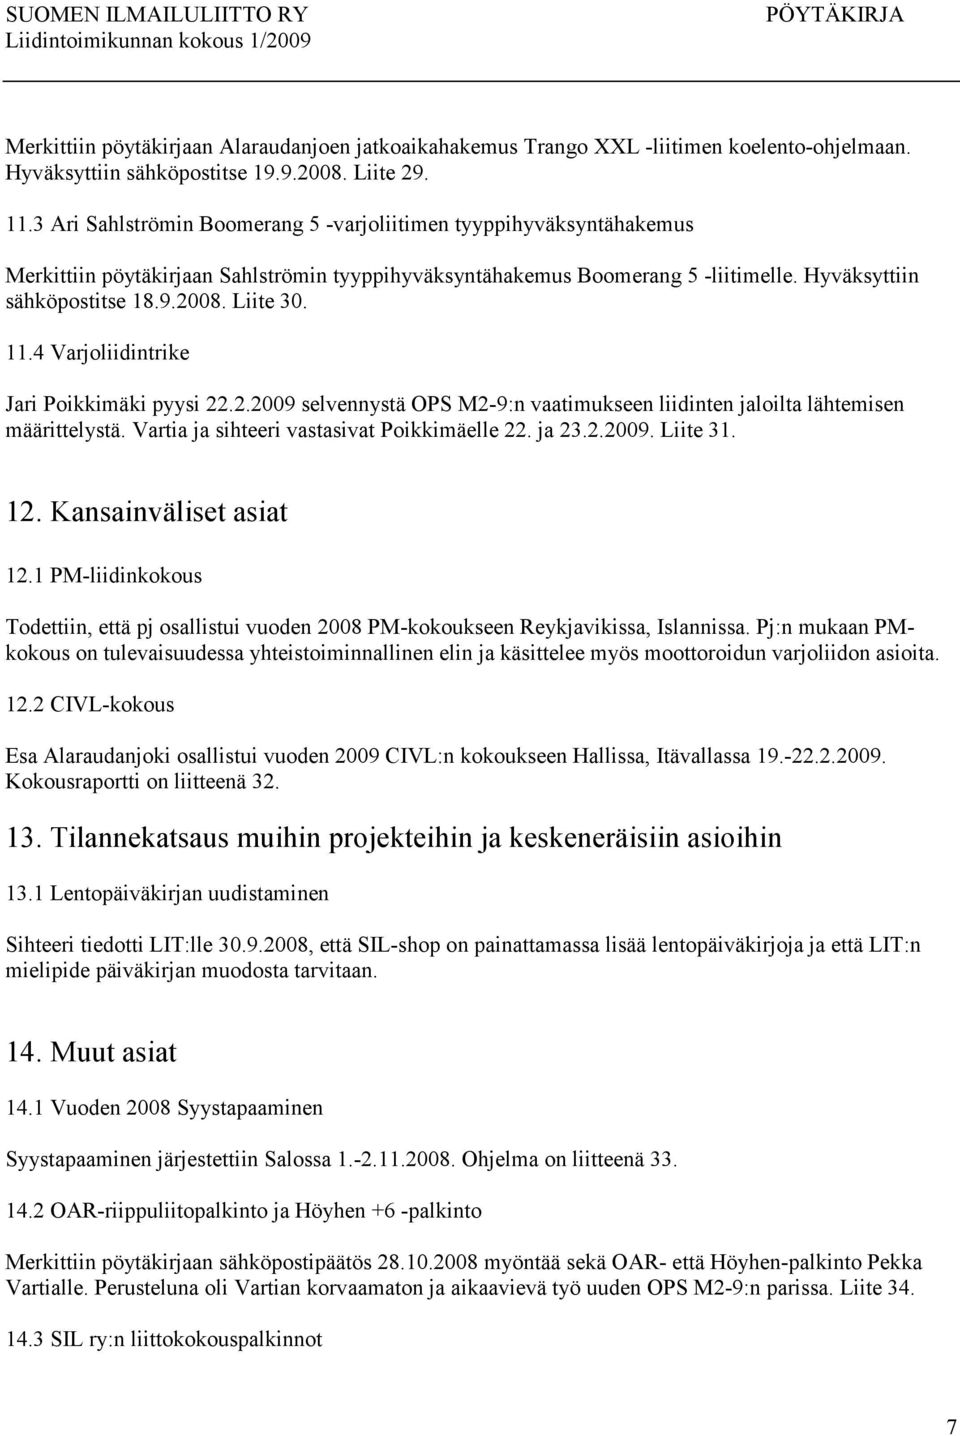 Liite 30. 11.4 Varjoliidintrike Jari Poikkimäki pyysi 22.2.2009 selvennystä OPS M2-9:n vaatimukseen liidinten jaloilta lähtemisen määrittelystä. Vartia ja sihteeri vastasivat Poikkimäelle 22. ja 23.2.2009. Liite 31.